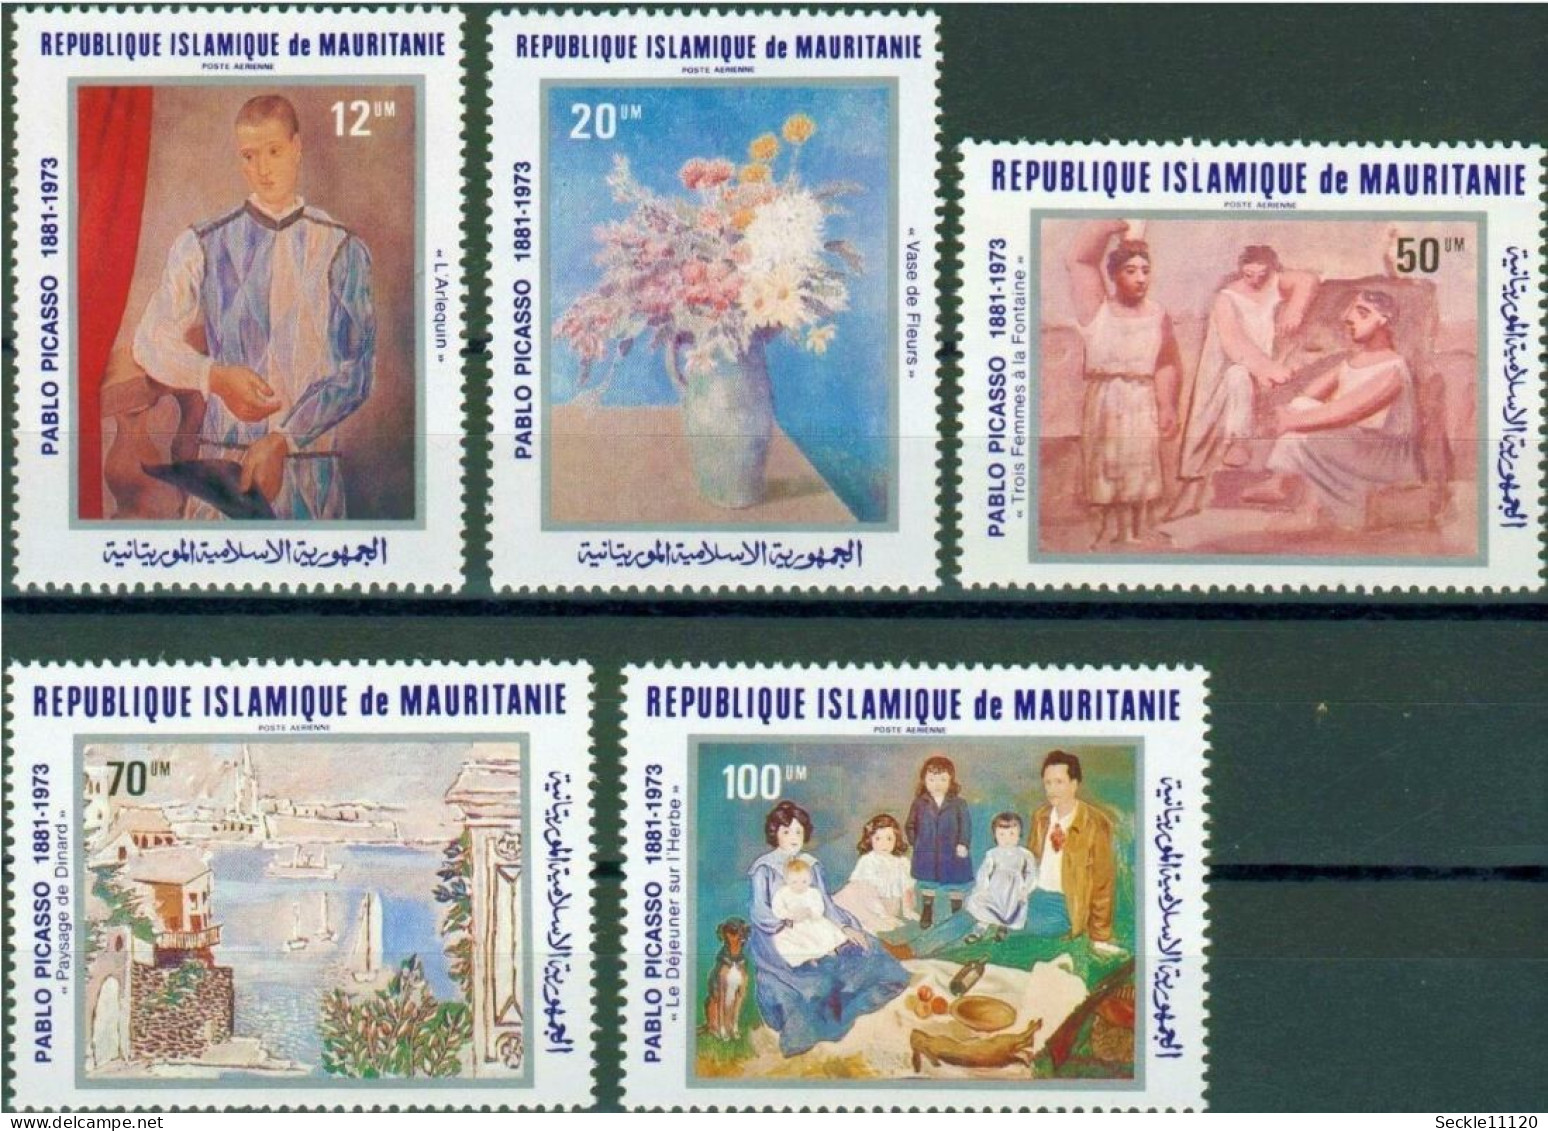 Mauritanie Mauritania - Série 1981 - Série Pablo Picasso - MNH - Mauritanie (1960-...)